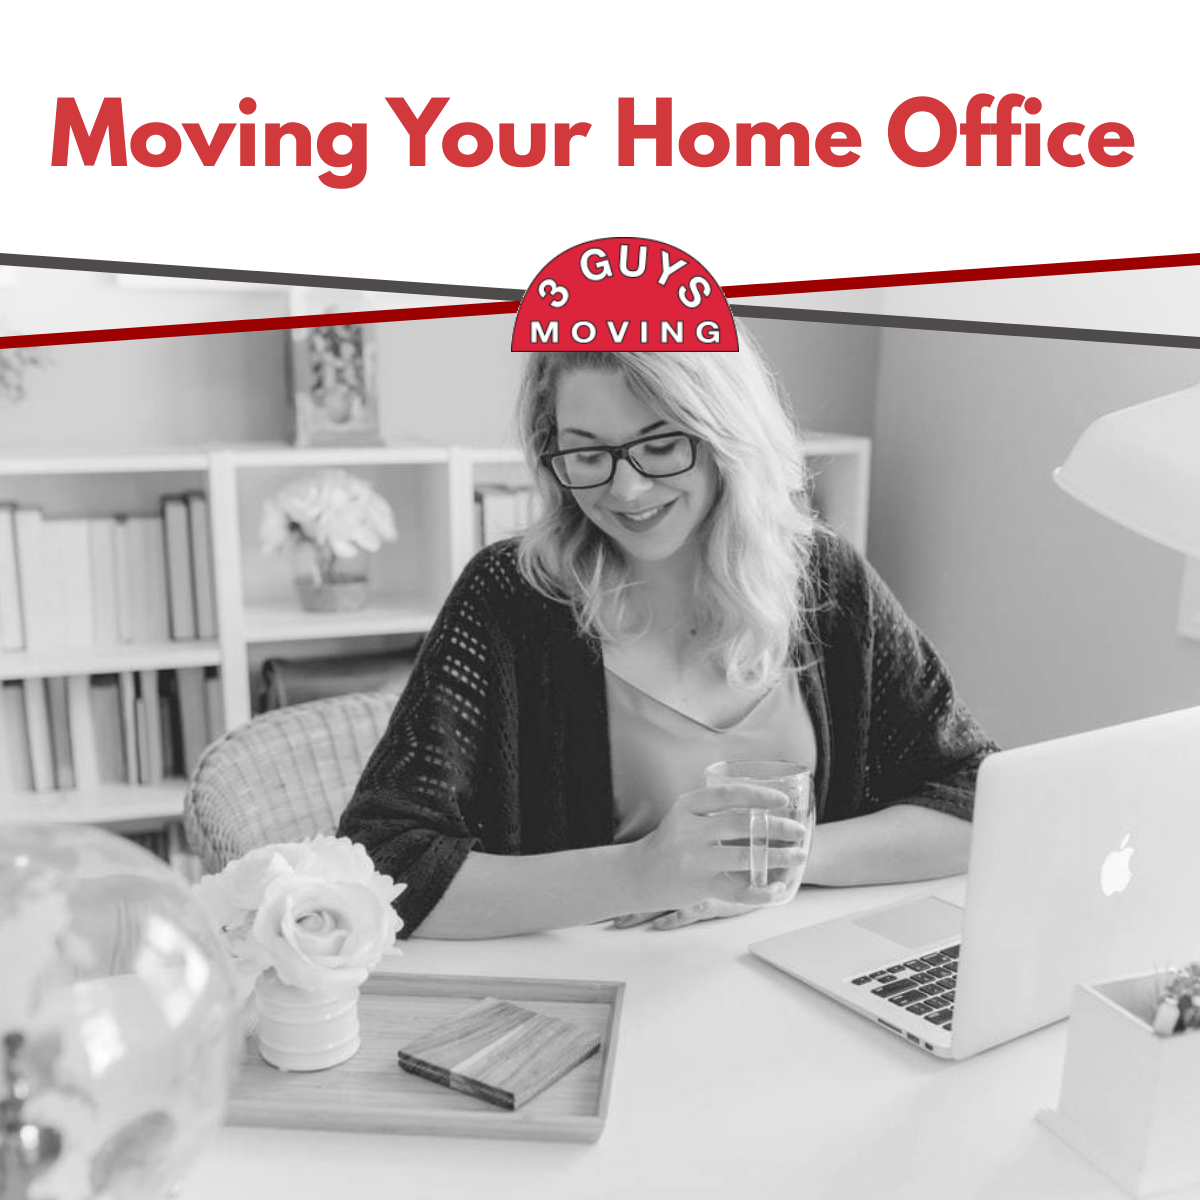 Moving Your Home Office - Moving Your Home Office